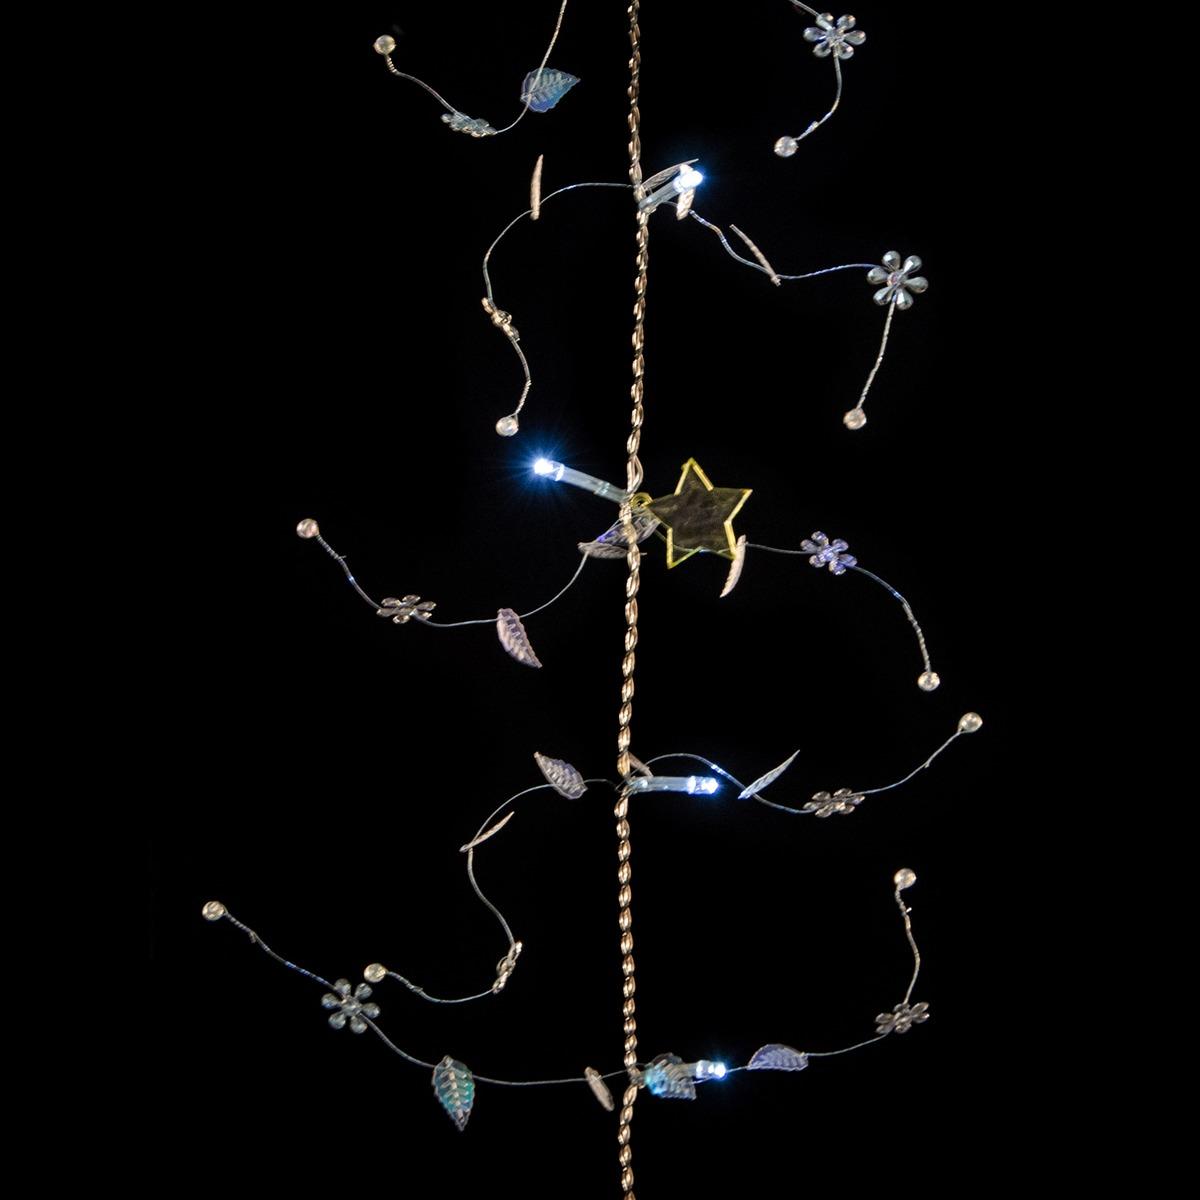 Guirlande électrique 20 led étoiles et feuilles - Longueur 1,8 mètre - Blanc froid